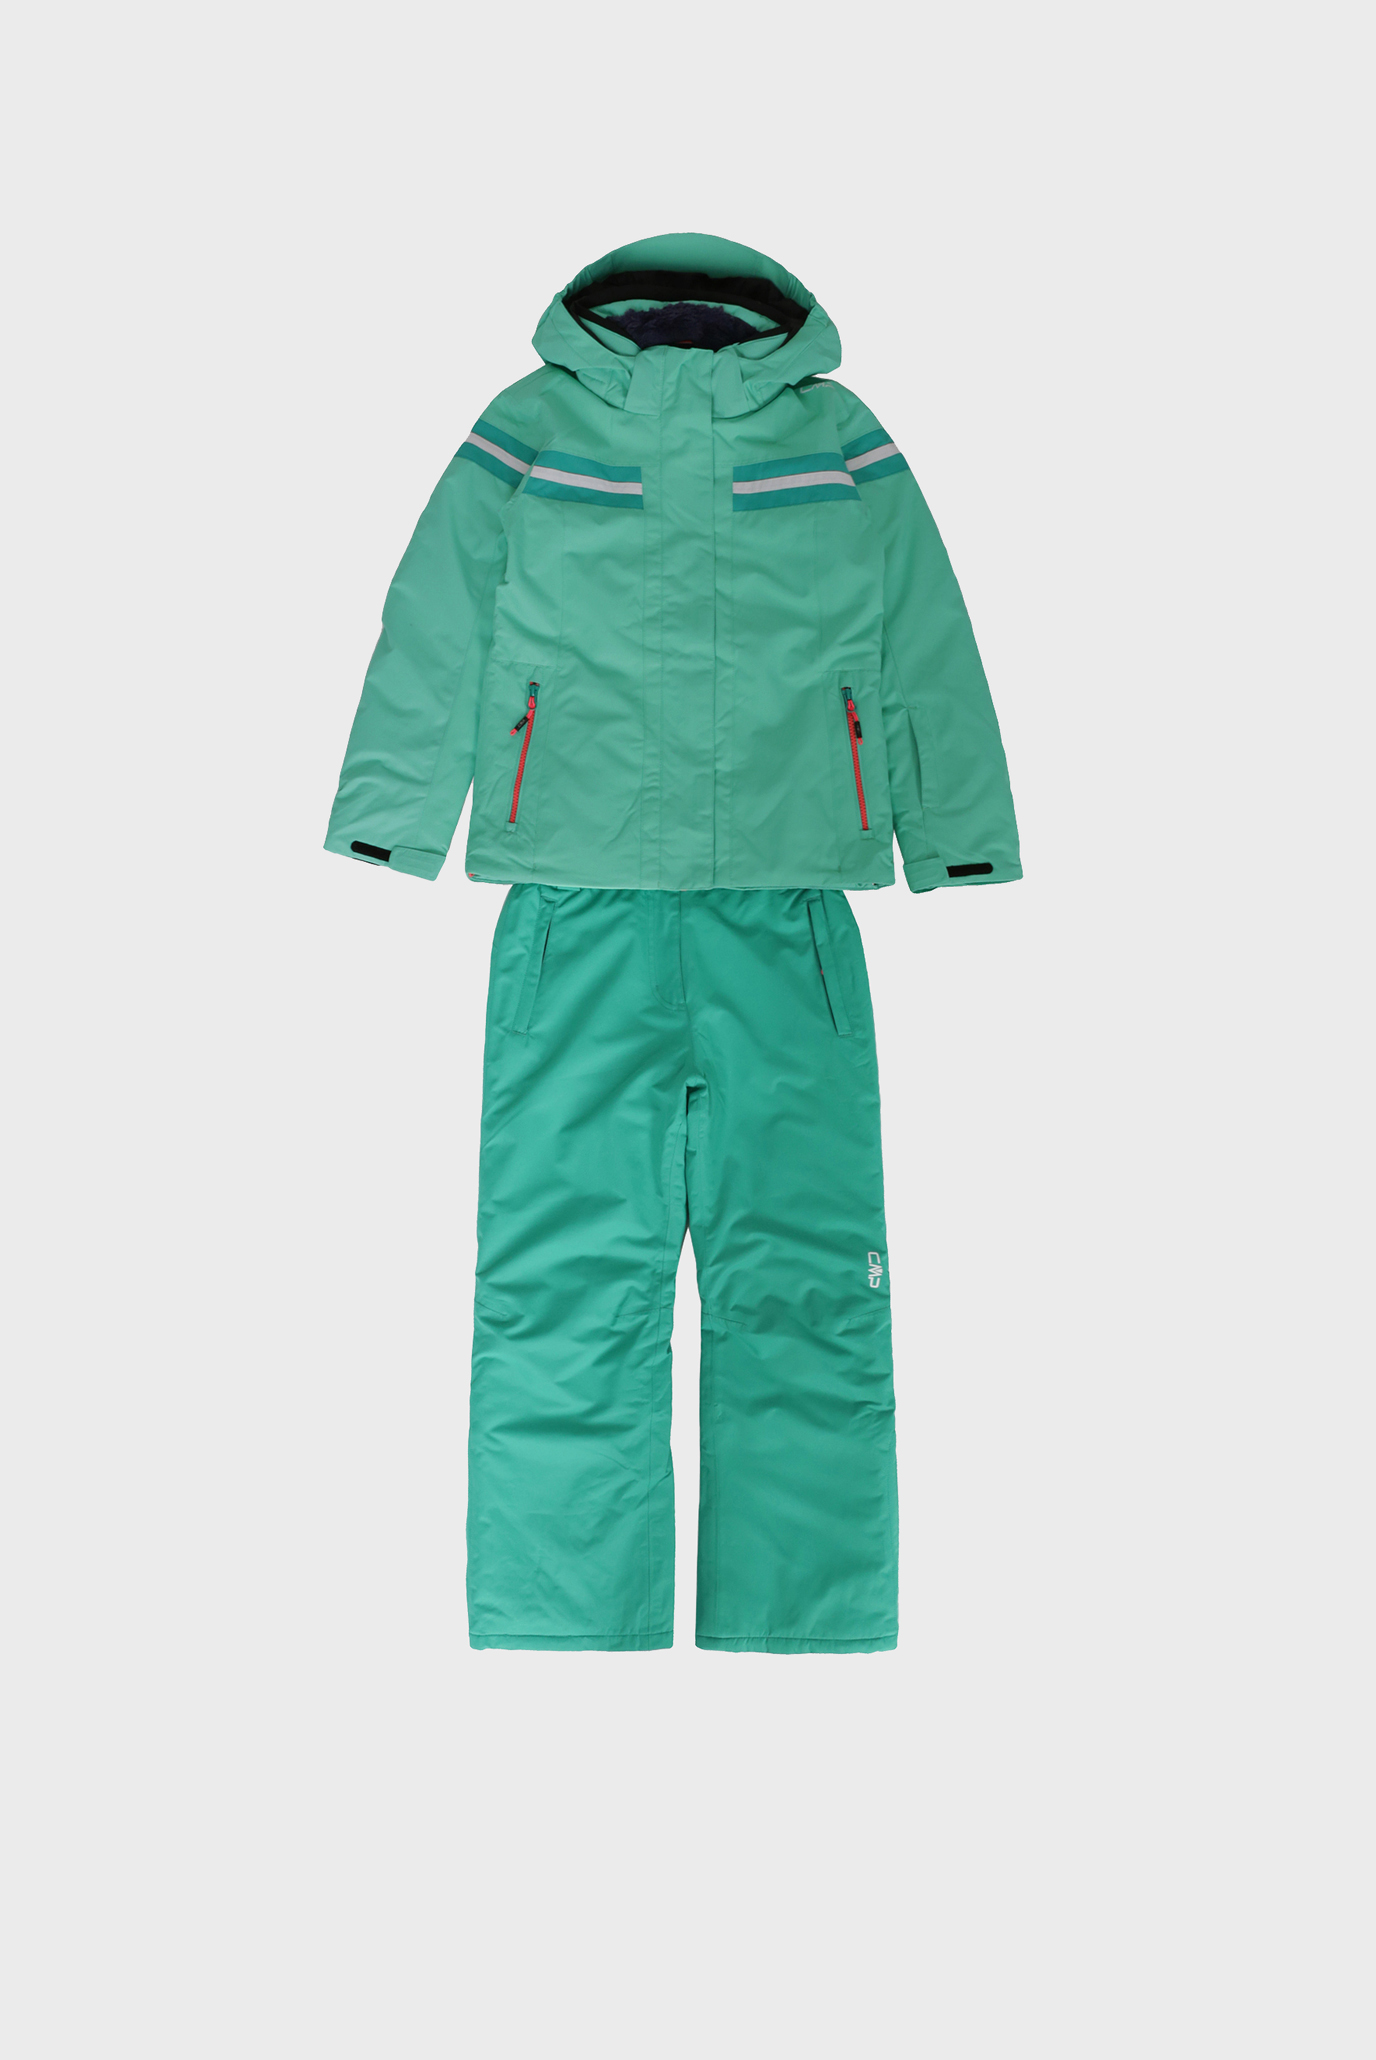 Дитячий салатовий лижний костюм (куртка, штани) 1